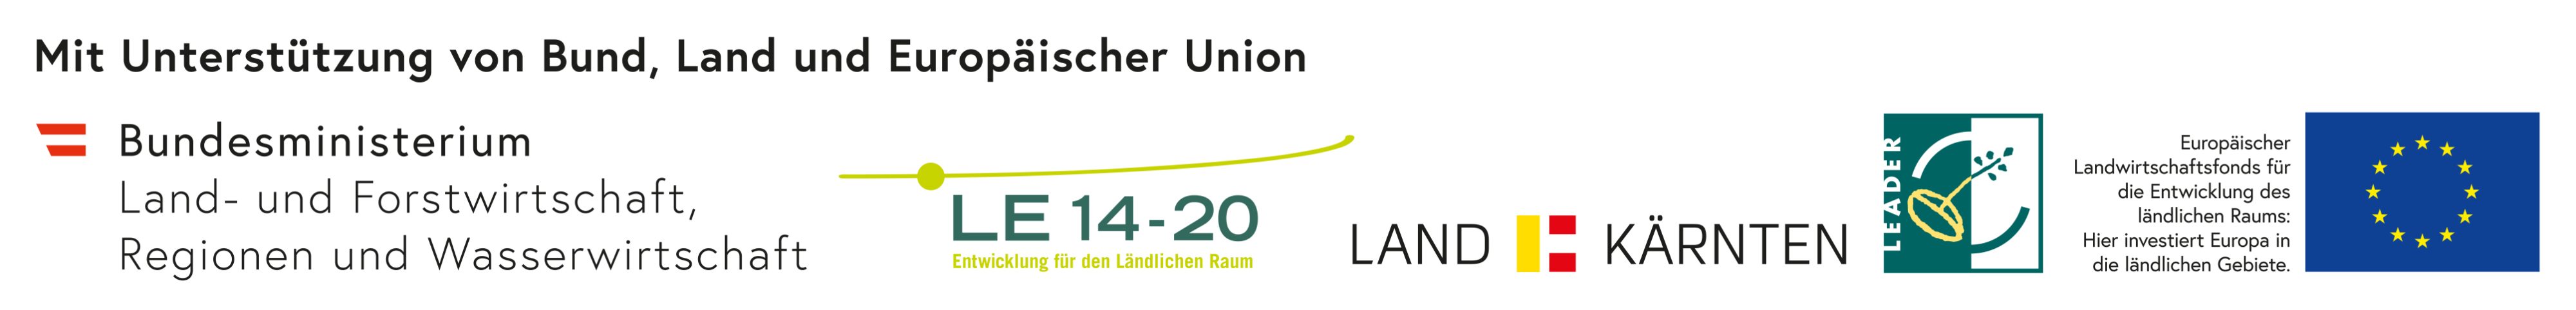 Foeg_Leiste_Bund_Laender_und_EU_ELER_2018_Test_4C